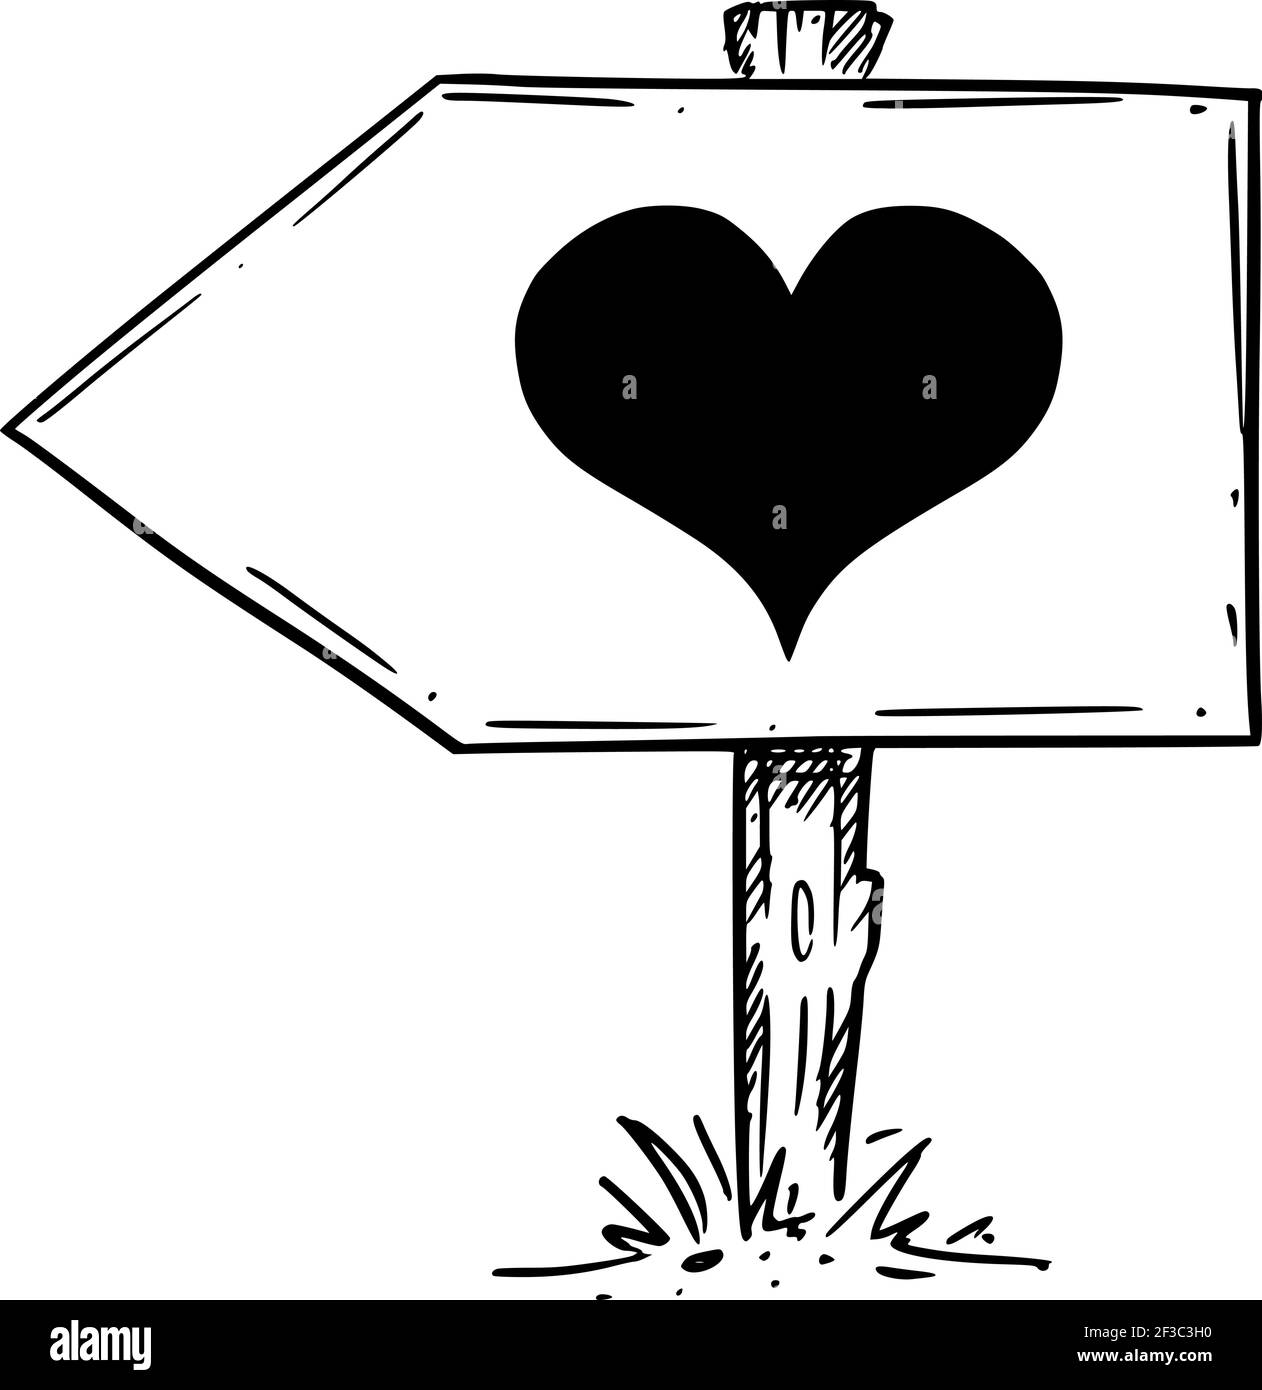 Suivez votre cœur, amour, émotion, sentiment. Flèche de trafic. Dessin à la main et illustration Illustration de Vecteur